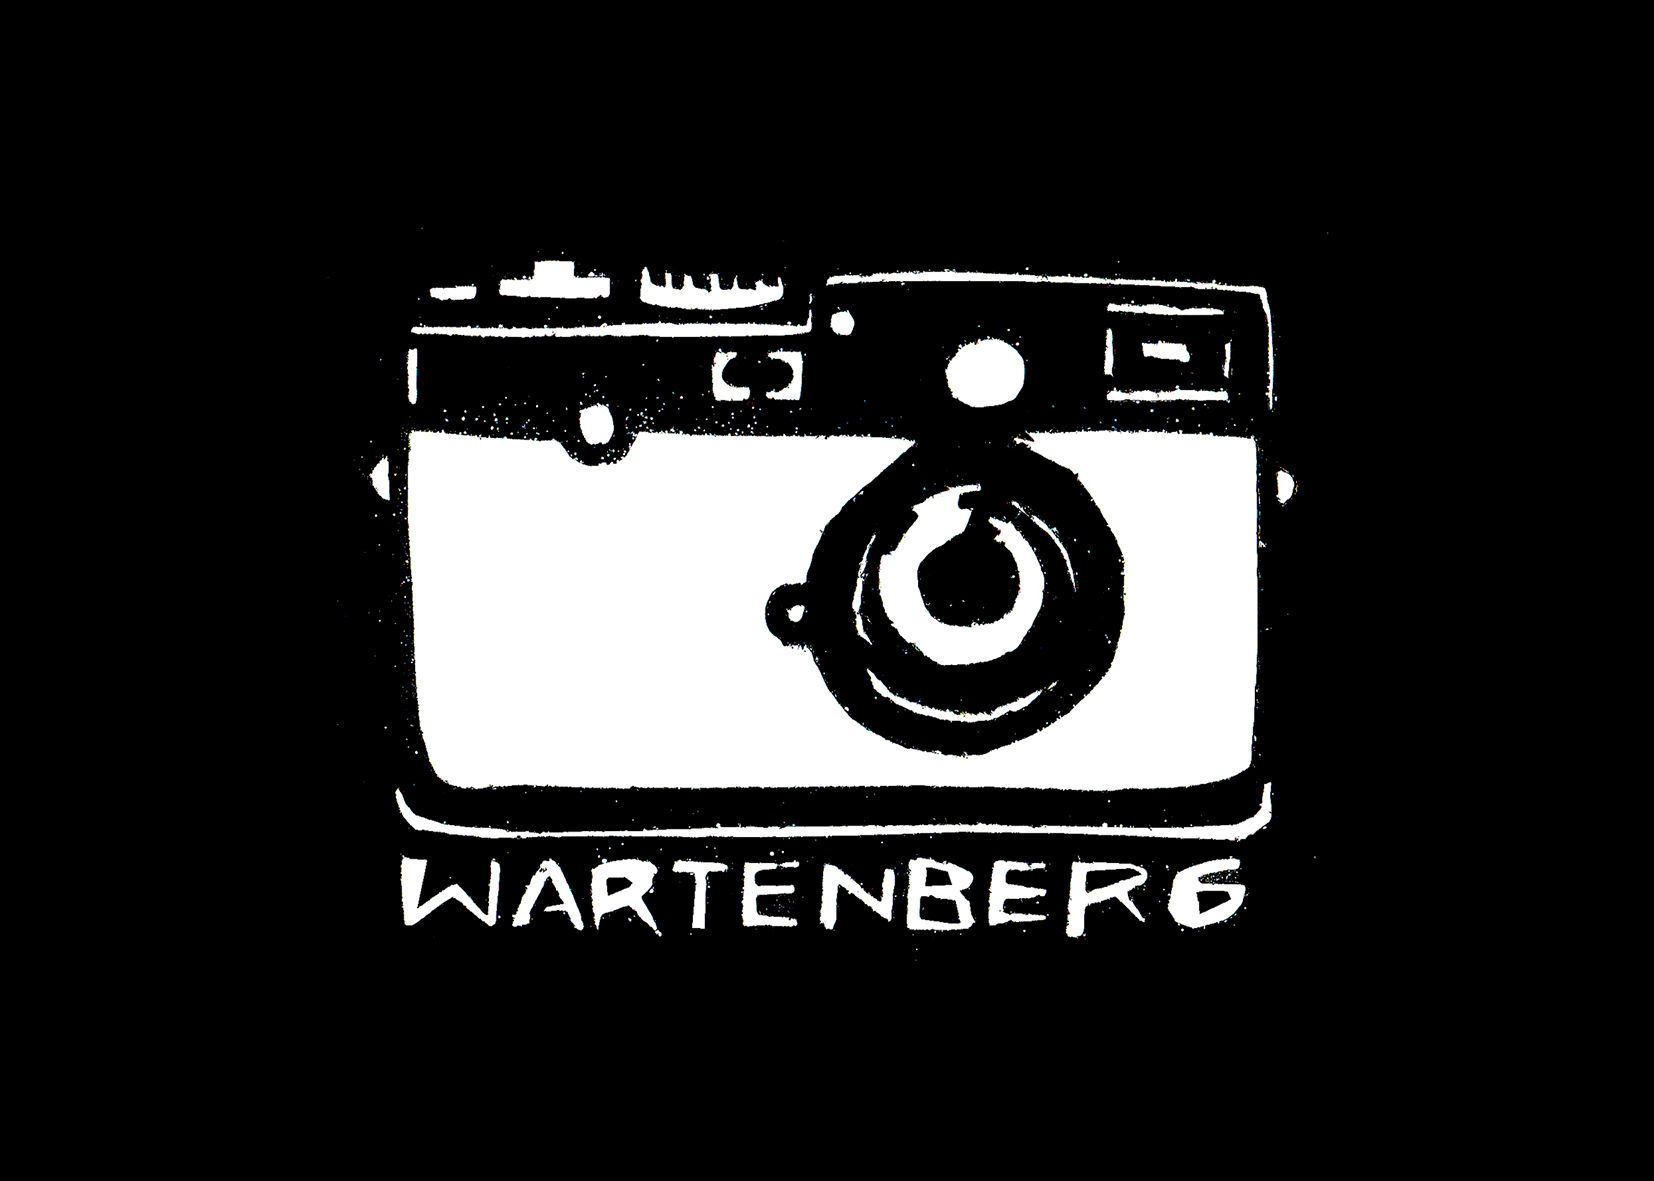 w-art-enberg